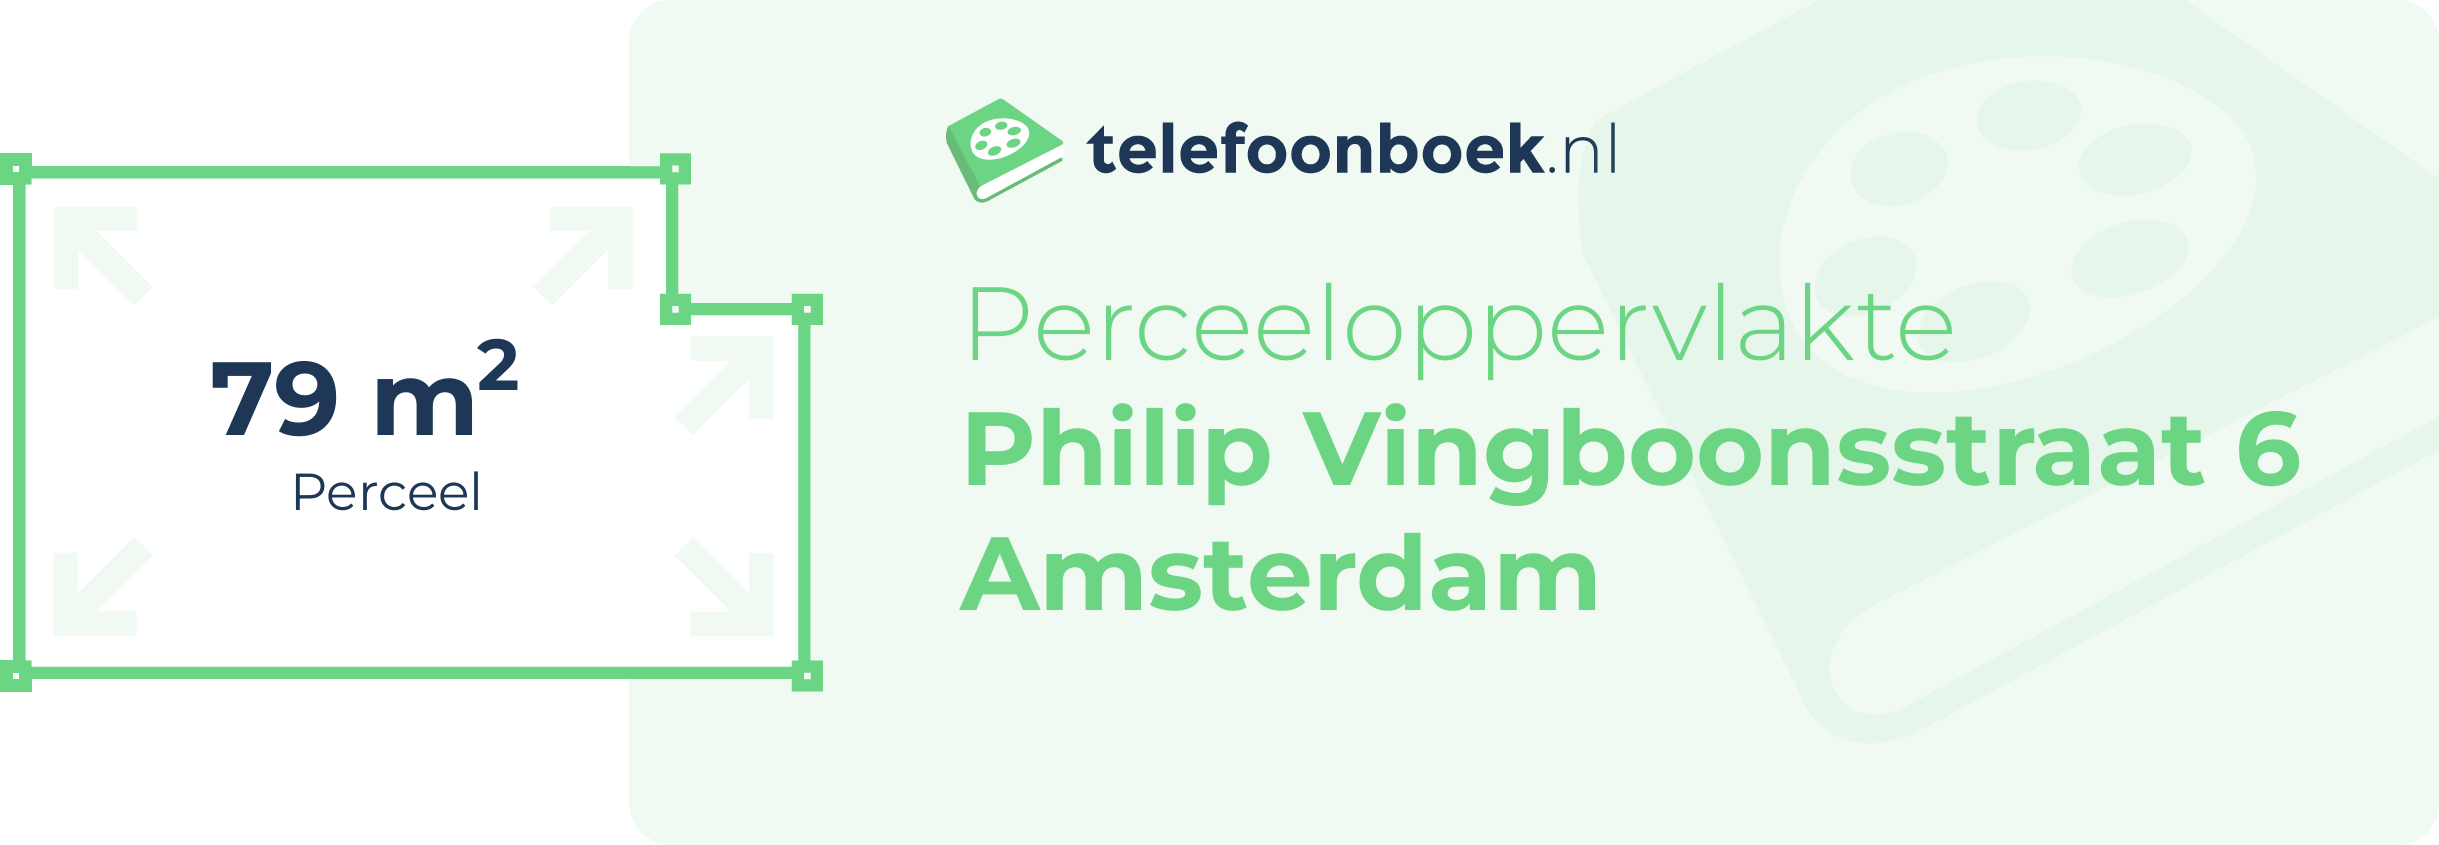 Perceeloppervlakte Philip Vingboonsstraat 6 Amsterdam